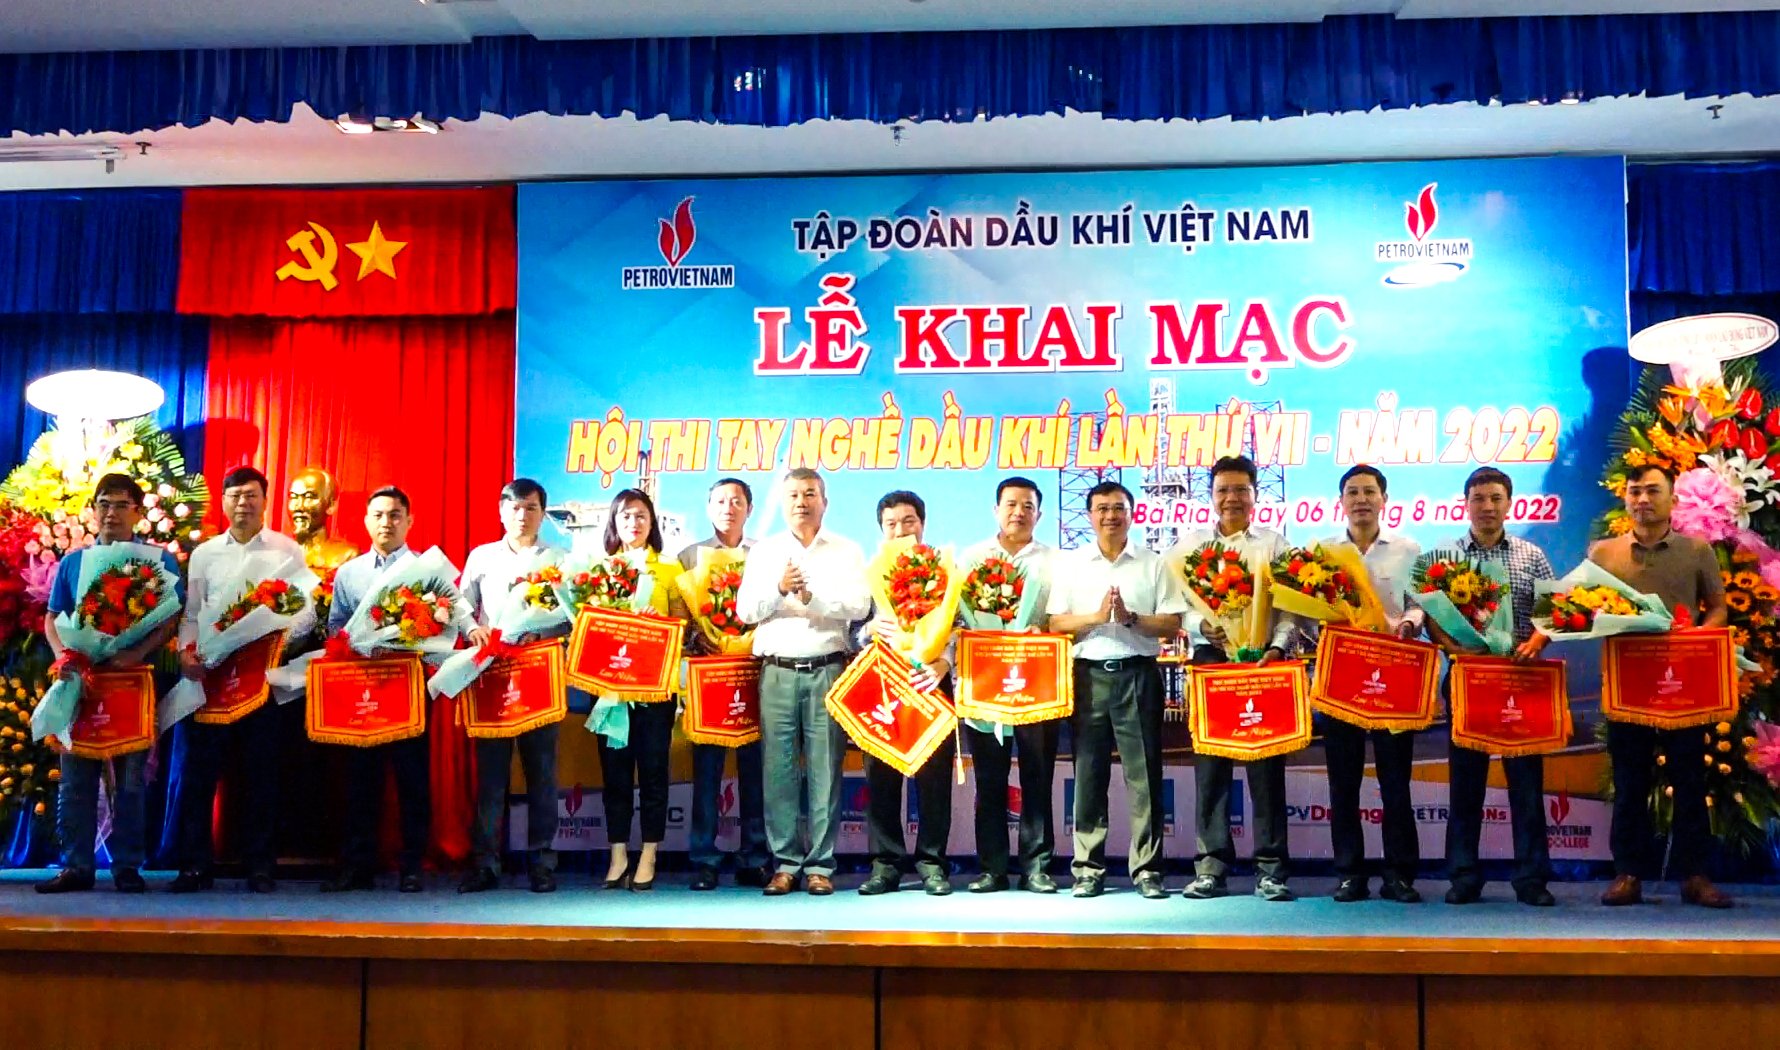 Thamd ự hội thi năm nay có 223 thí sinh đến từ 13 đơn vị thuộc Tập đoàn Dầu khí Việt Nam